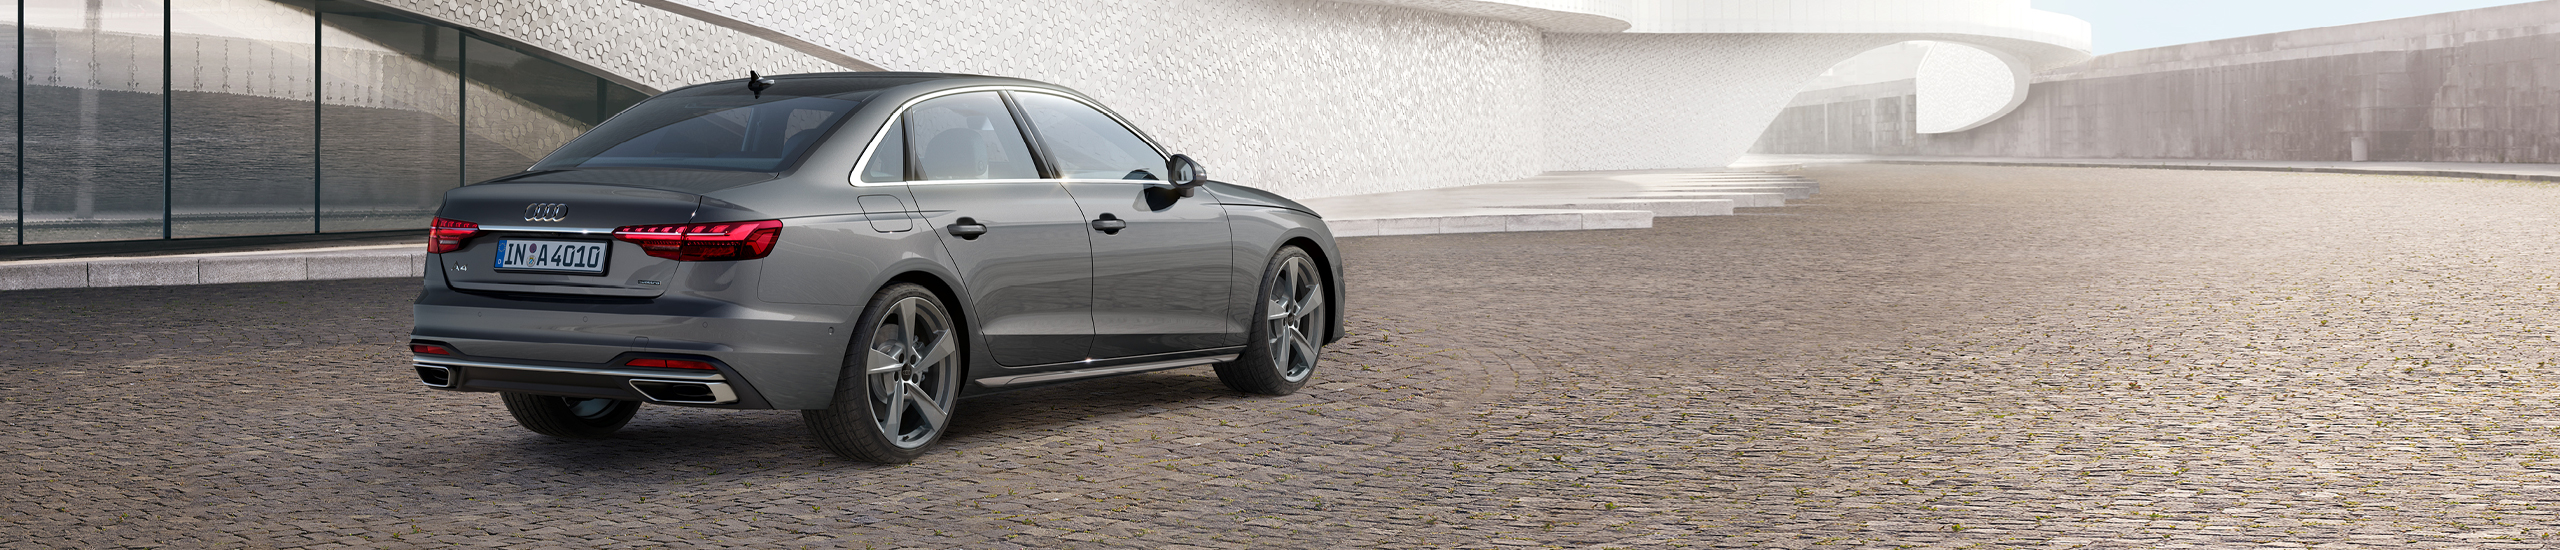 Zakelijk, stijlvol en bijzonder luxe. Dat is de nieuwe Audi A4